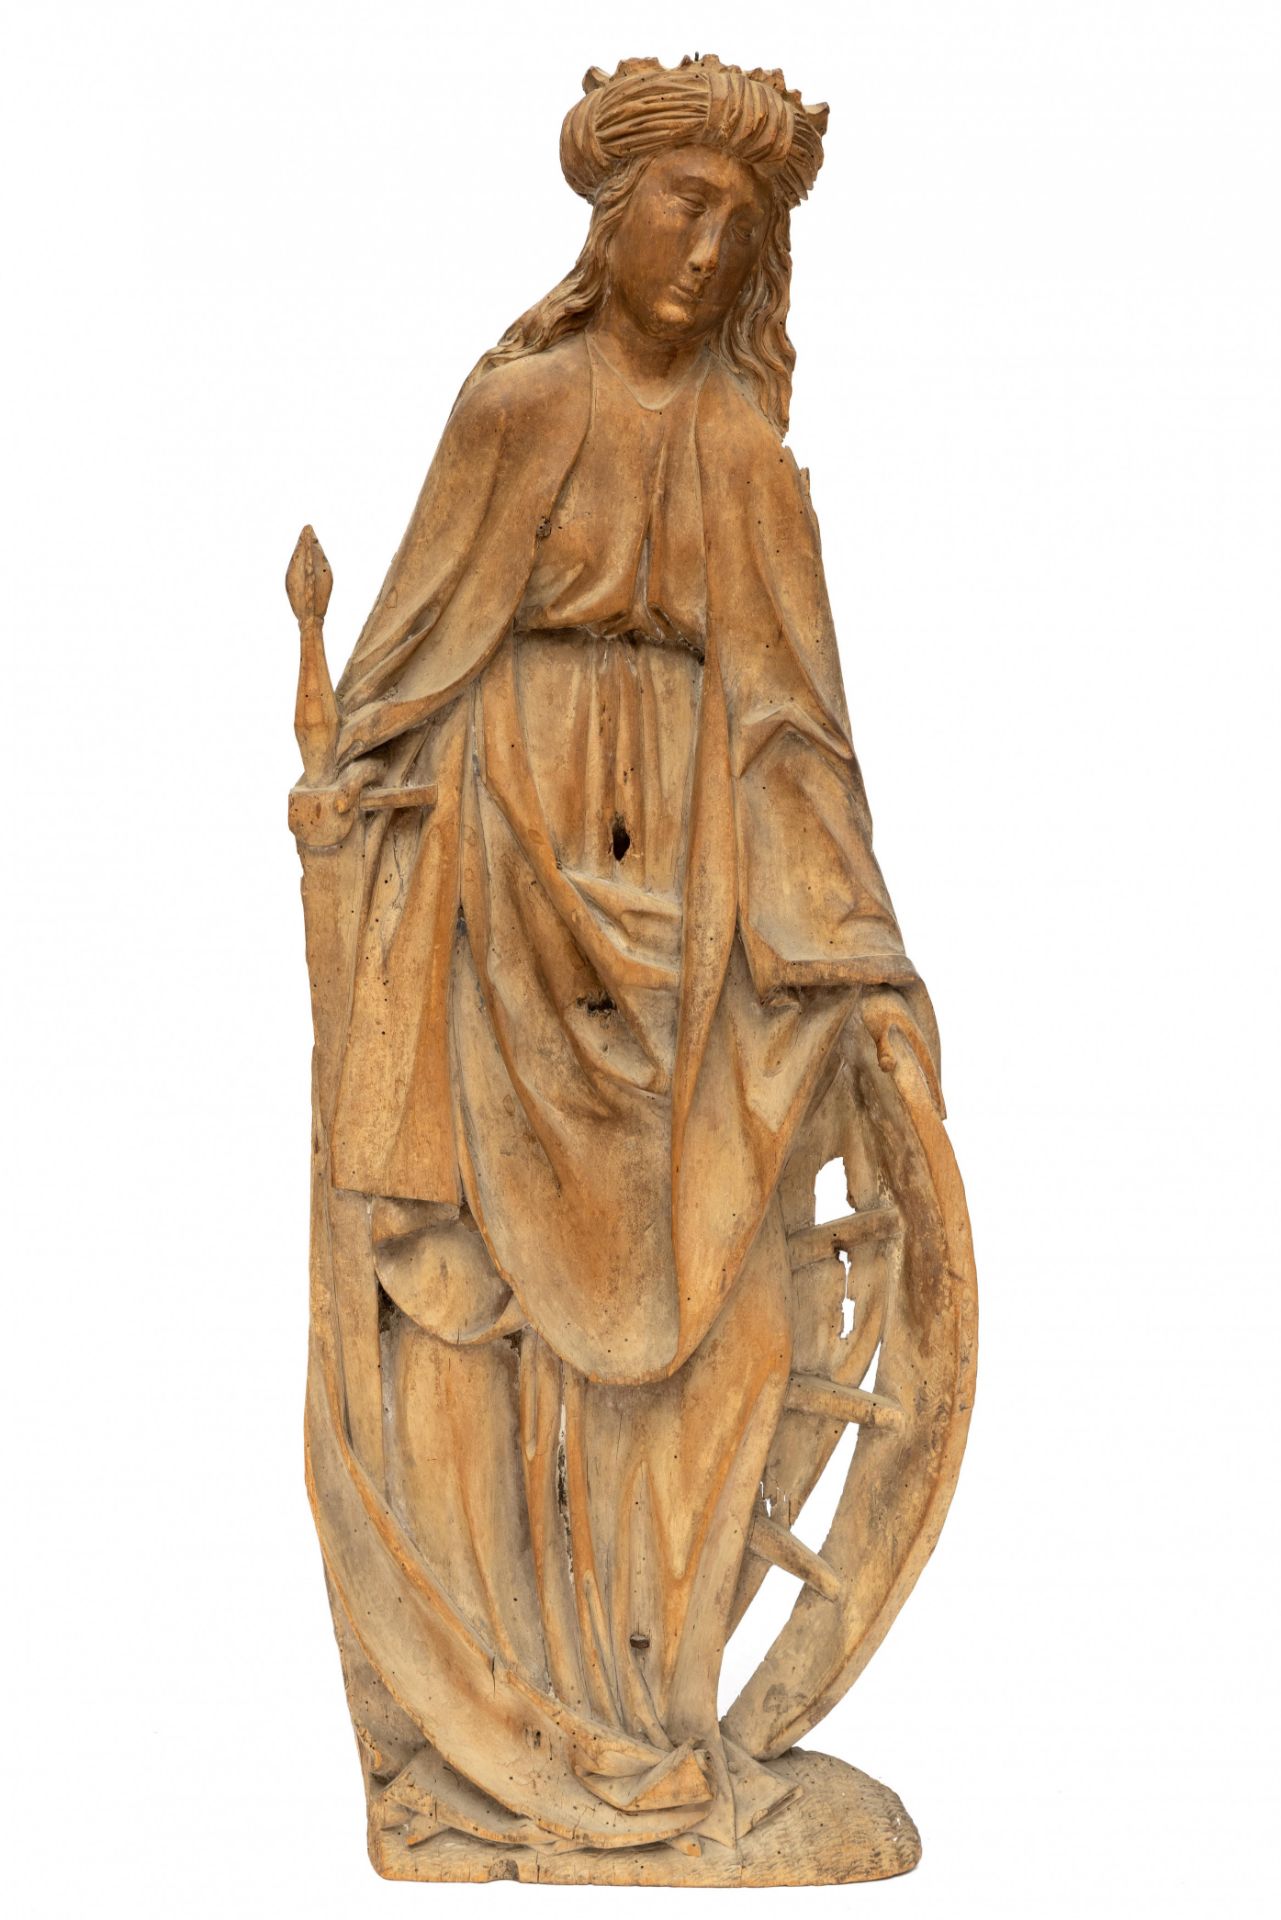 Duitsland, Franken, lindenhouten heiligebeeld, heilige Katherina, ca. 1490